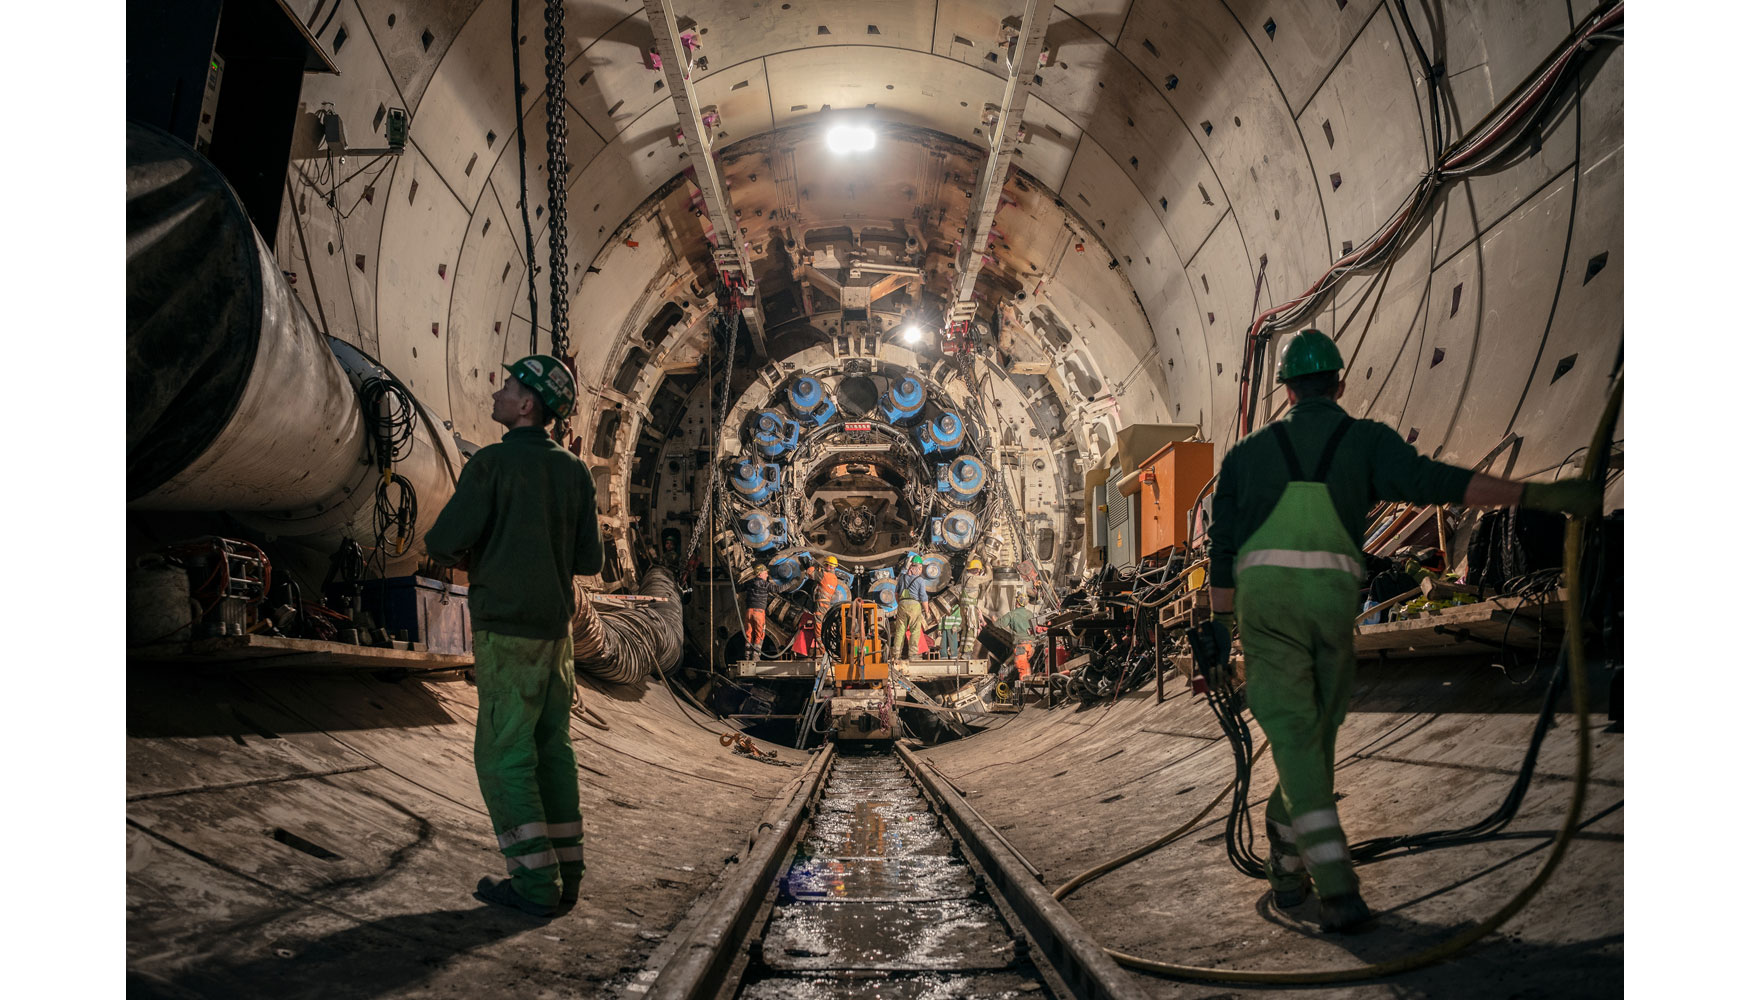 El desmontaje de la tuneladora Suse conllev numerosas dificultades tcnicas